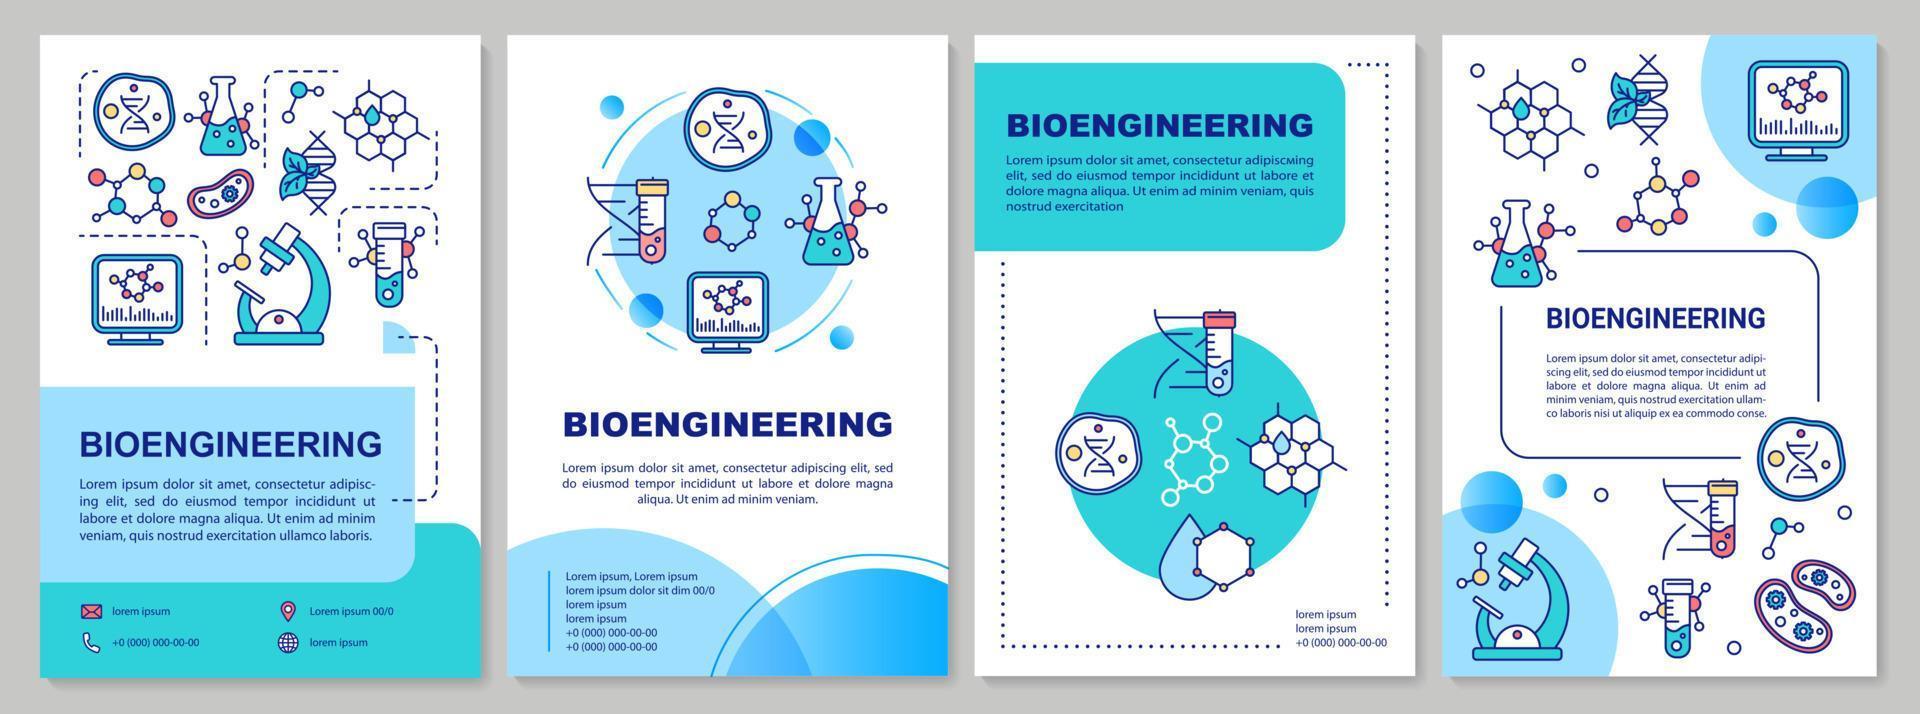 bioteknik broschyr mall. laboratorieforskning. flygblad, häfte, broschyrtryck, omslagsdesign med linjära illustrationer. vektor sidlayouter för tidskrifter, årsredovisningar, reklamaffischer